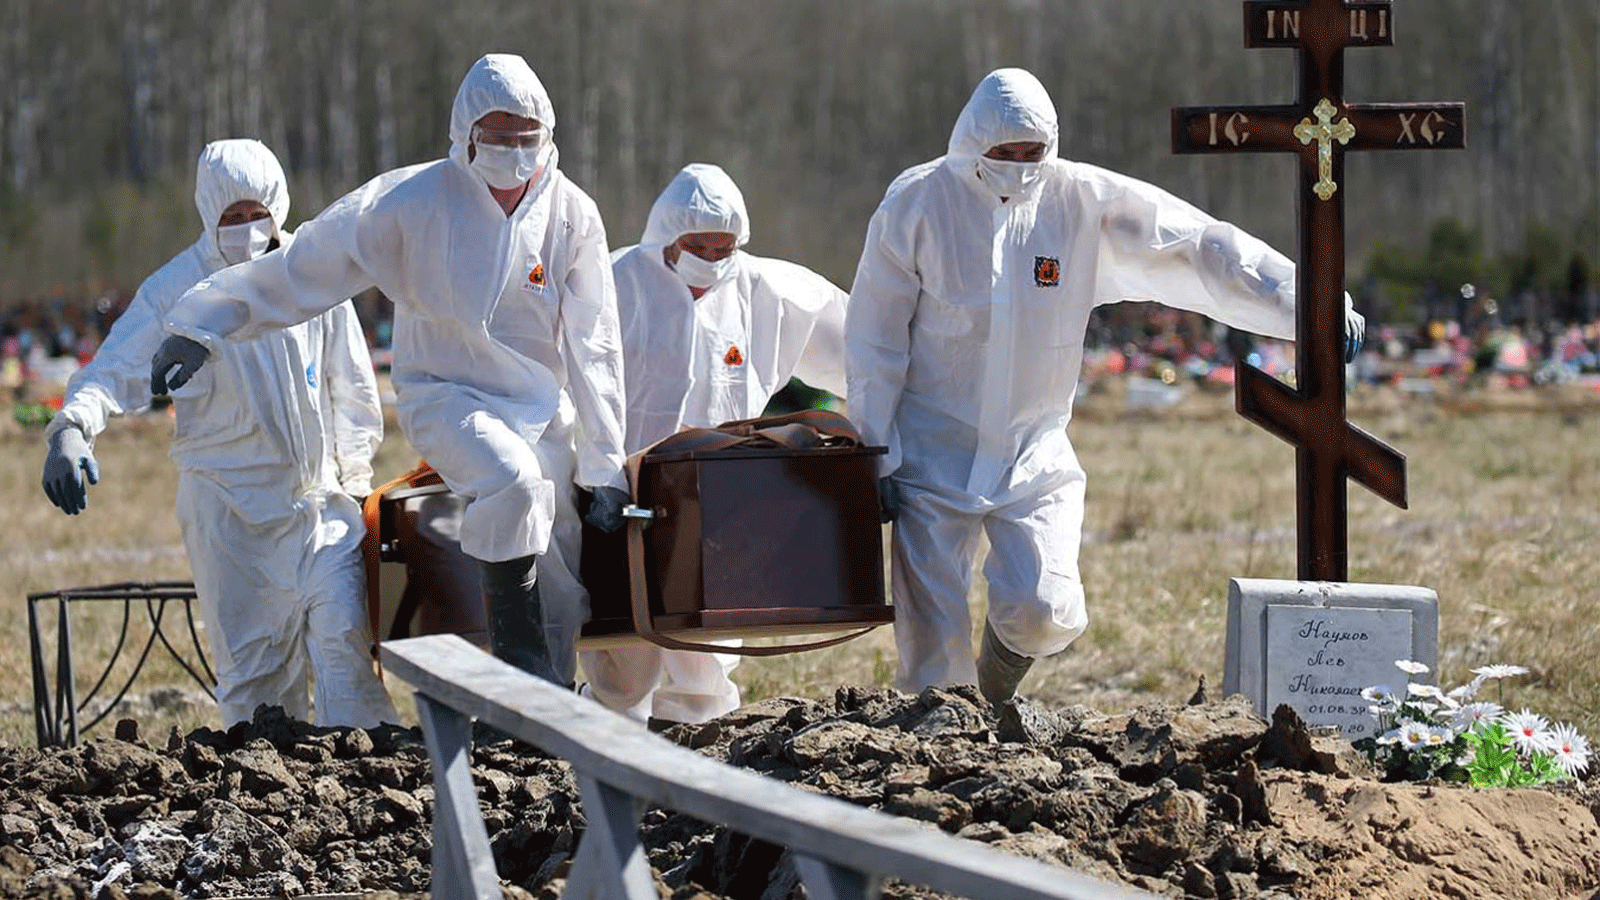 عمال خدمة الجنازة في سان بطرسبرج يدفنون ضحية فيروس كورونا. صورة من وكالة الأنباء الروسية TASS